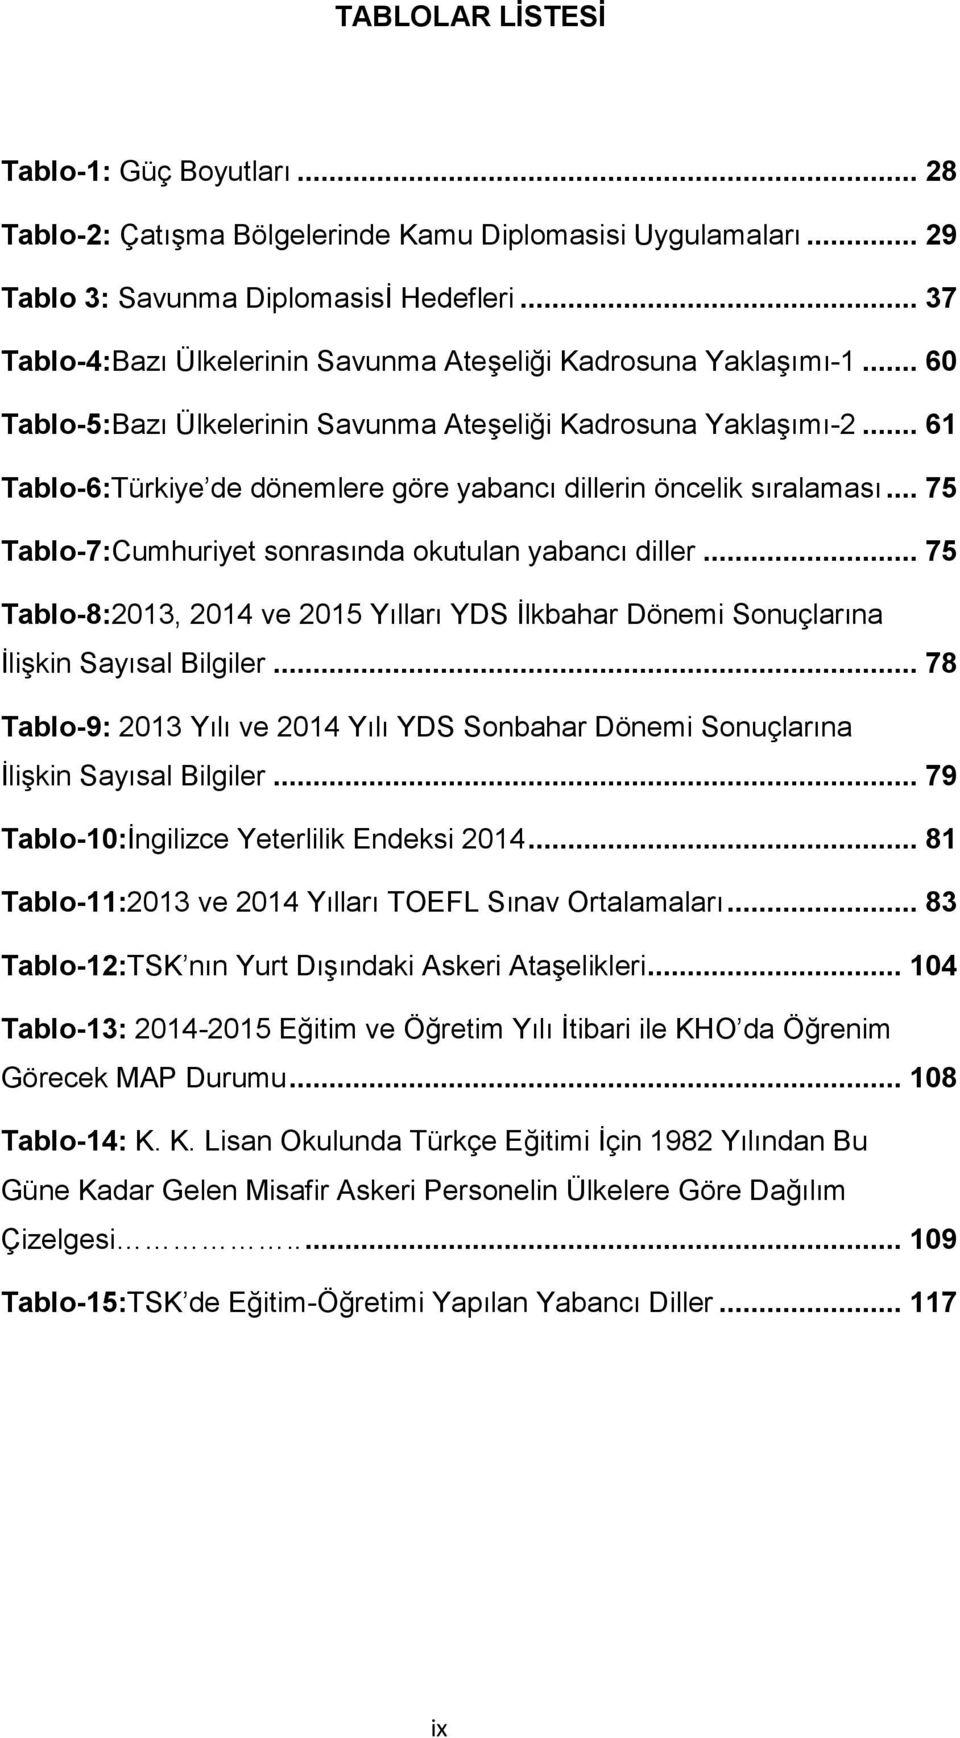 .. 61 Tablo-6:Türkiye de dönemlere göre yabancı dillerin öncelik sıralaması... 75 Tablo-7:Cumhuriyet sonrasında okutulan yabancı diller.